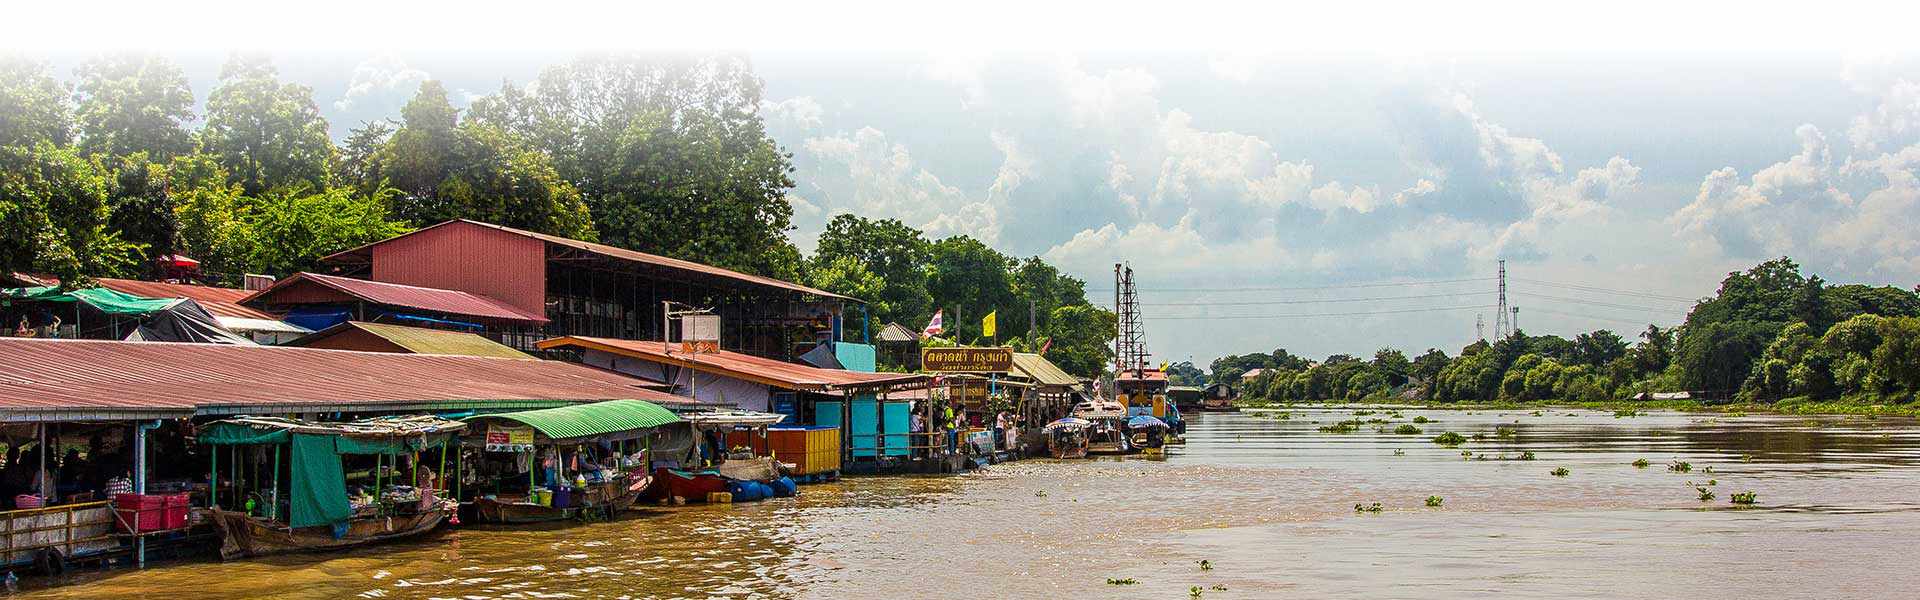 Ayutthaya tour river ride